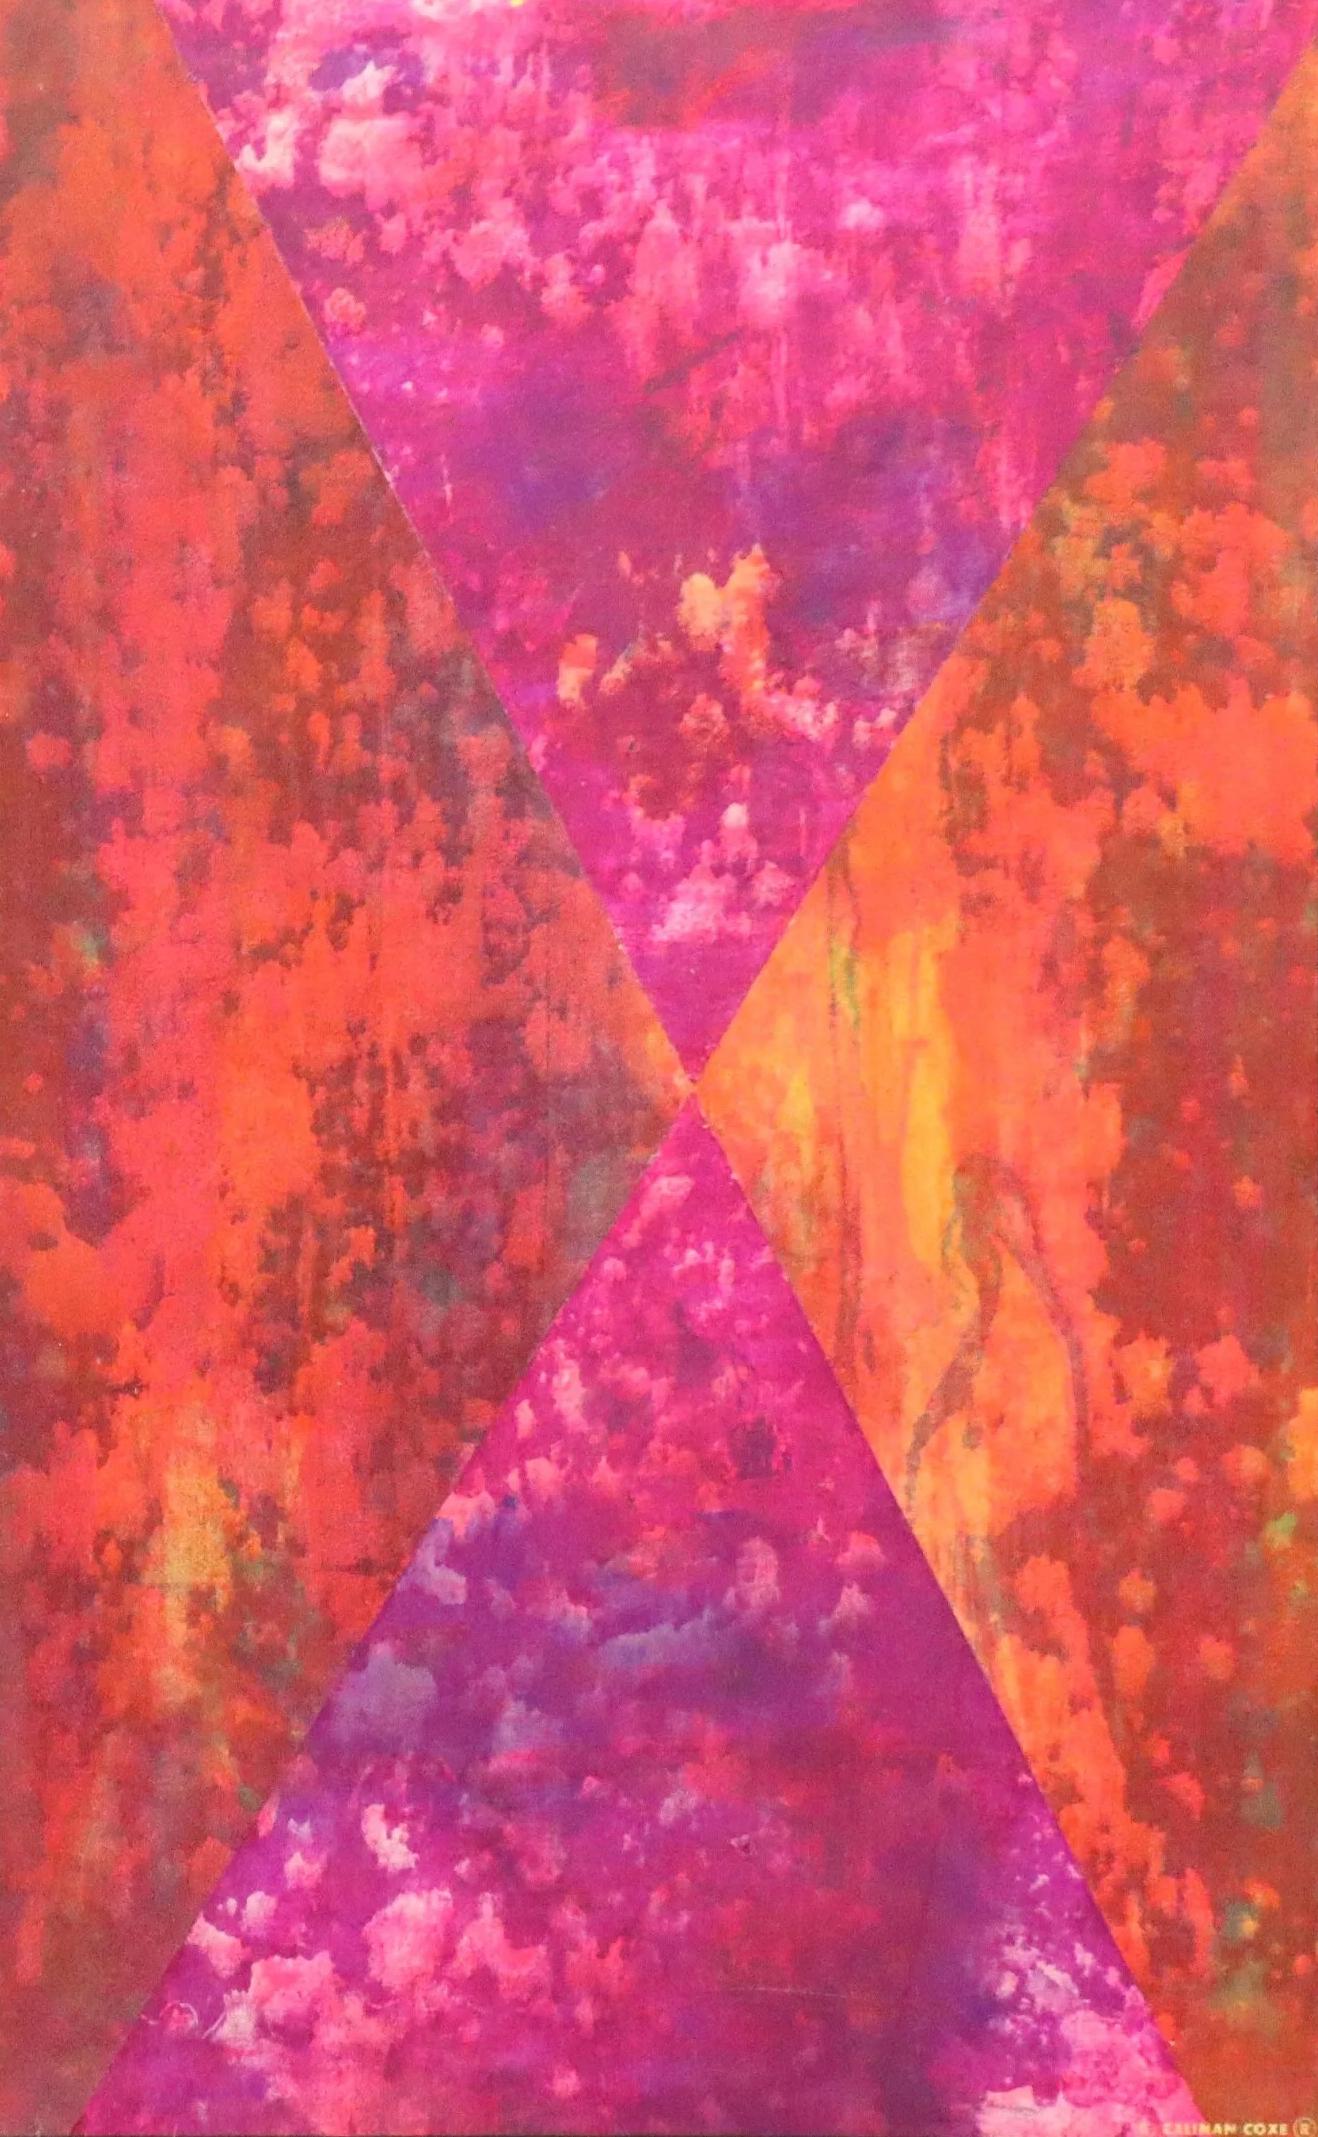 Abstract Painting G. Caliman Coxe - Exodus 12 - Artiste africain américain - coloré rouge, orange, violet et rose